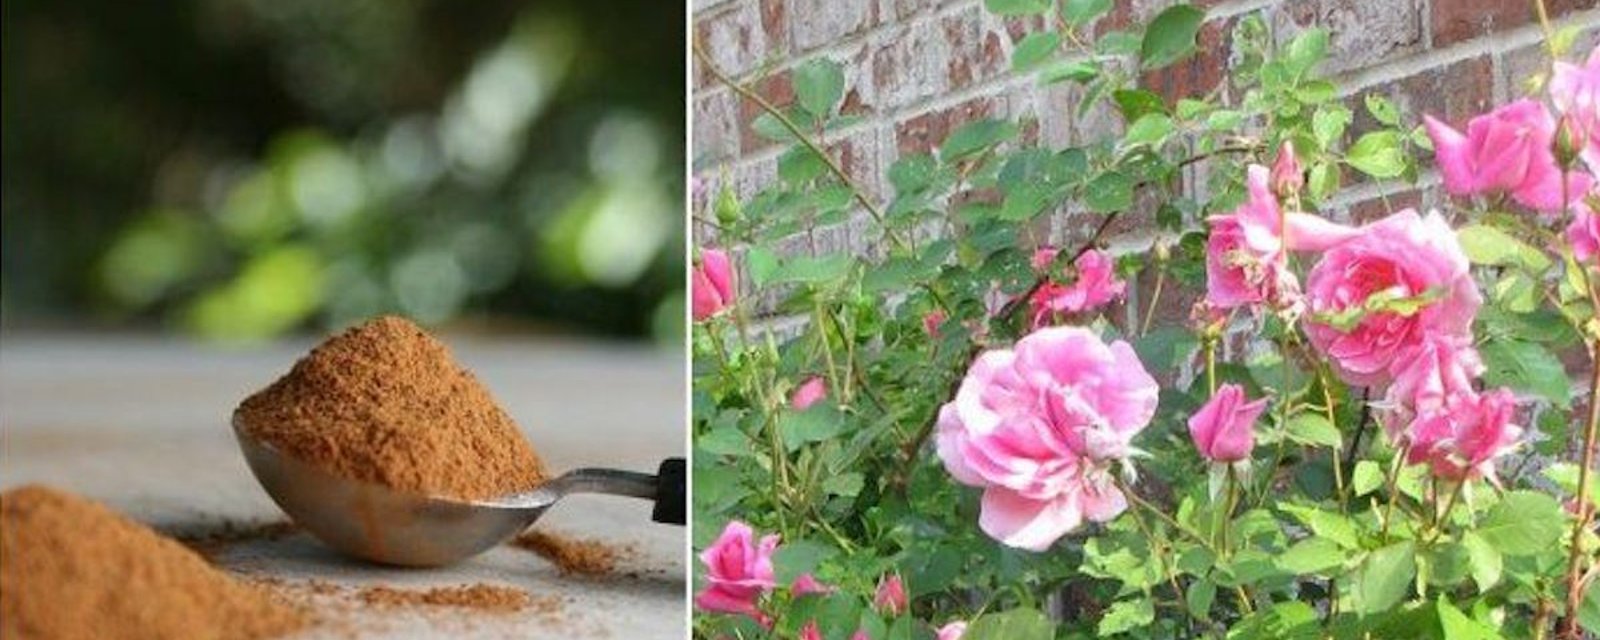 La cannelle est l'alliée des jardiniers. Voici 7 façons de l'utiliser!